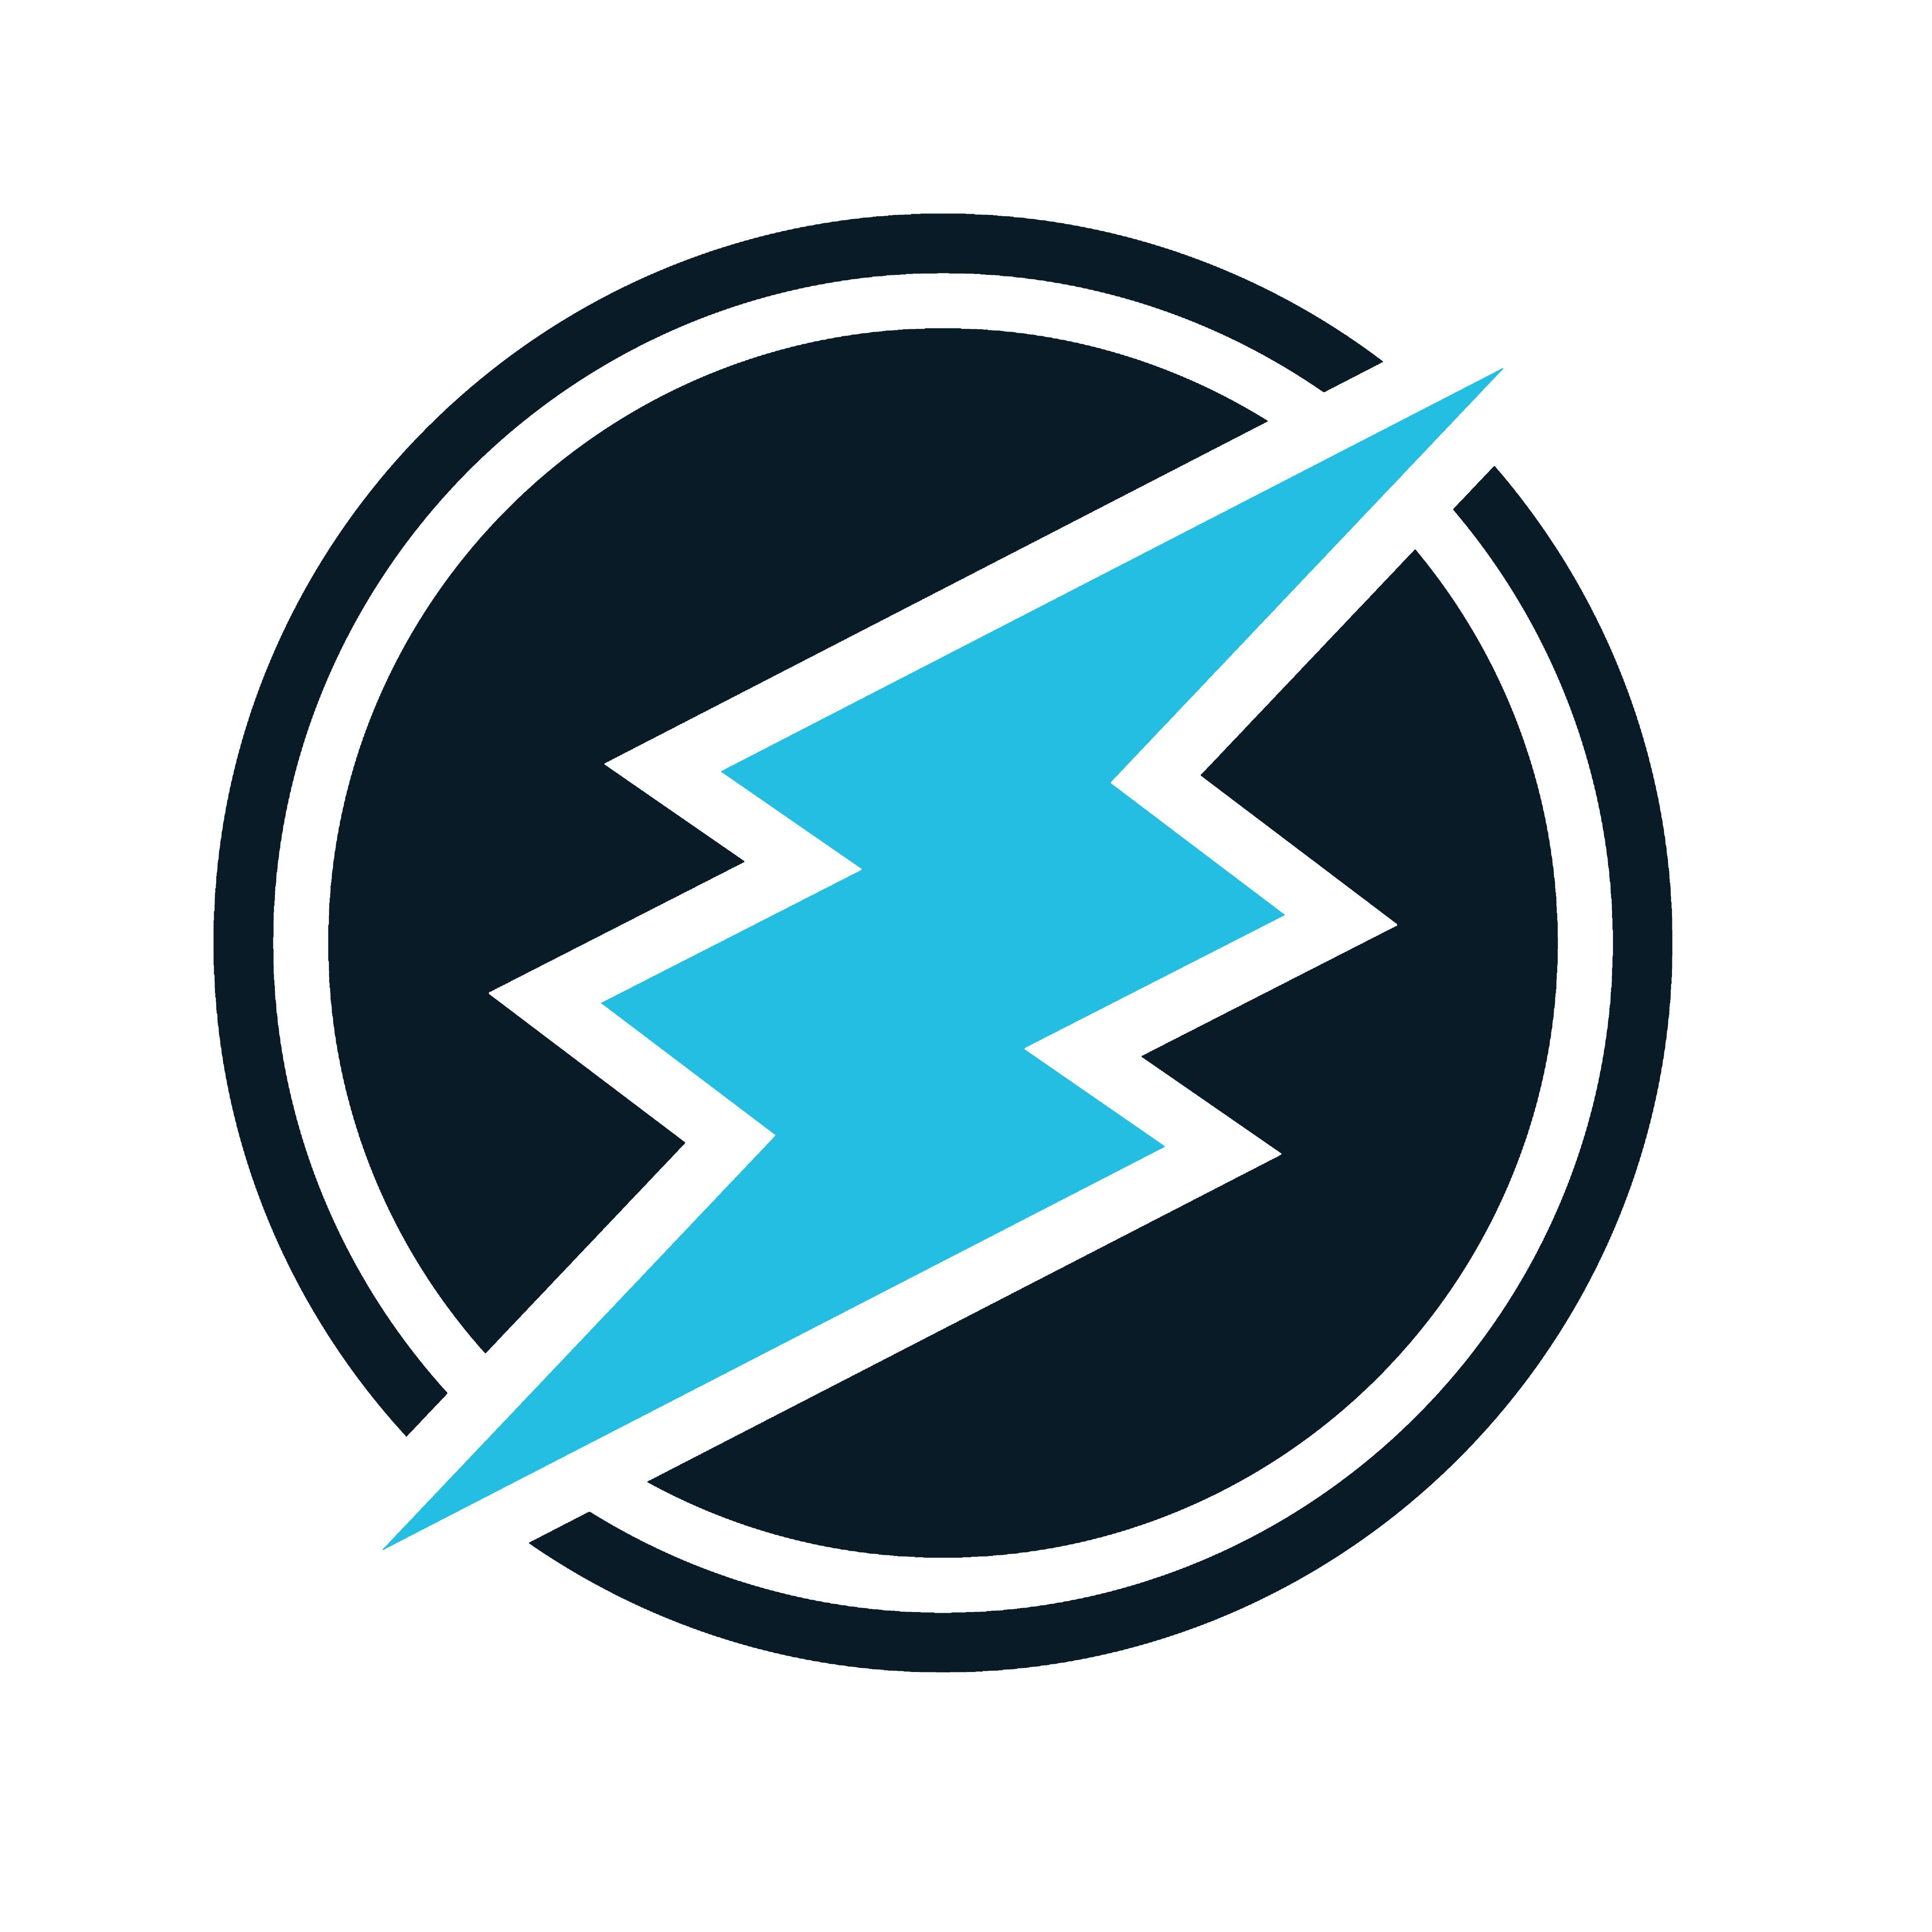 Electro Logo - Electroneum Logo Wallpaper - DEMO IPS